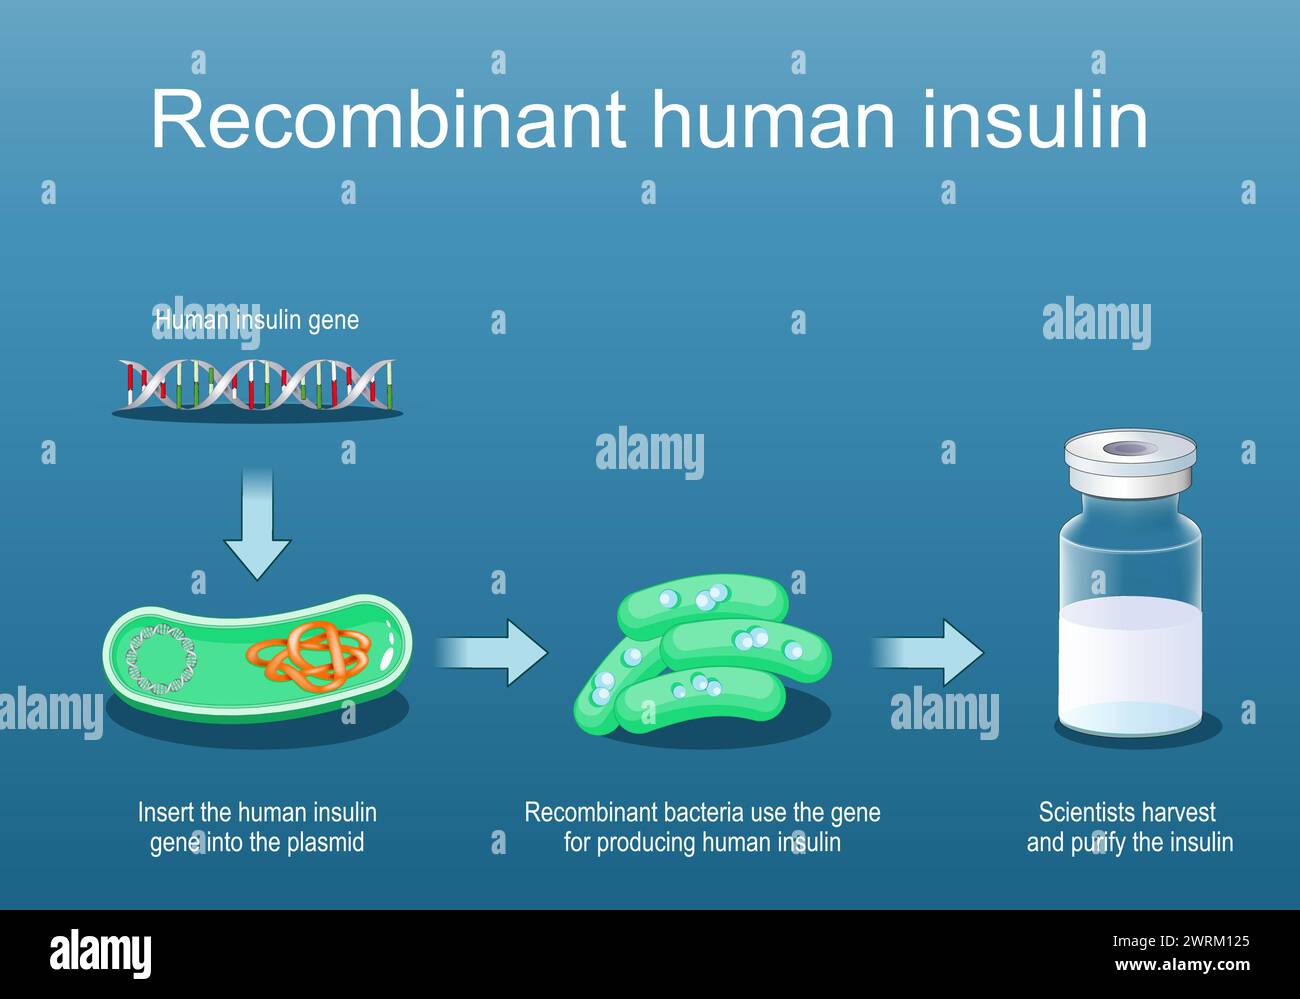 Rekombinantes Humaninsulin. Rekombinante Bakterien verwenden das Gen zur Insulinproduktion. Querschnitt eines Bakteriums mit Plasmid. Durchstechflasche aus Glas mit Insulin. Stock Vektor